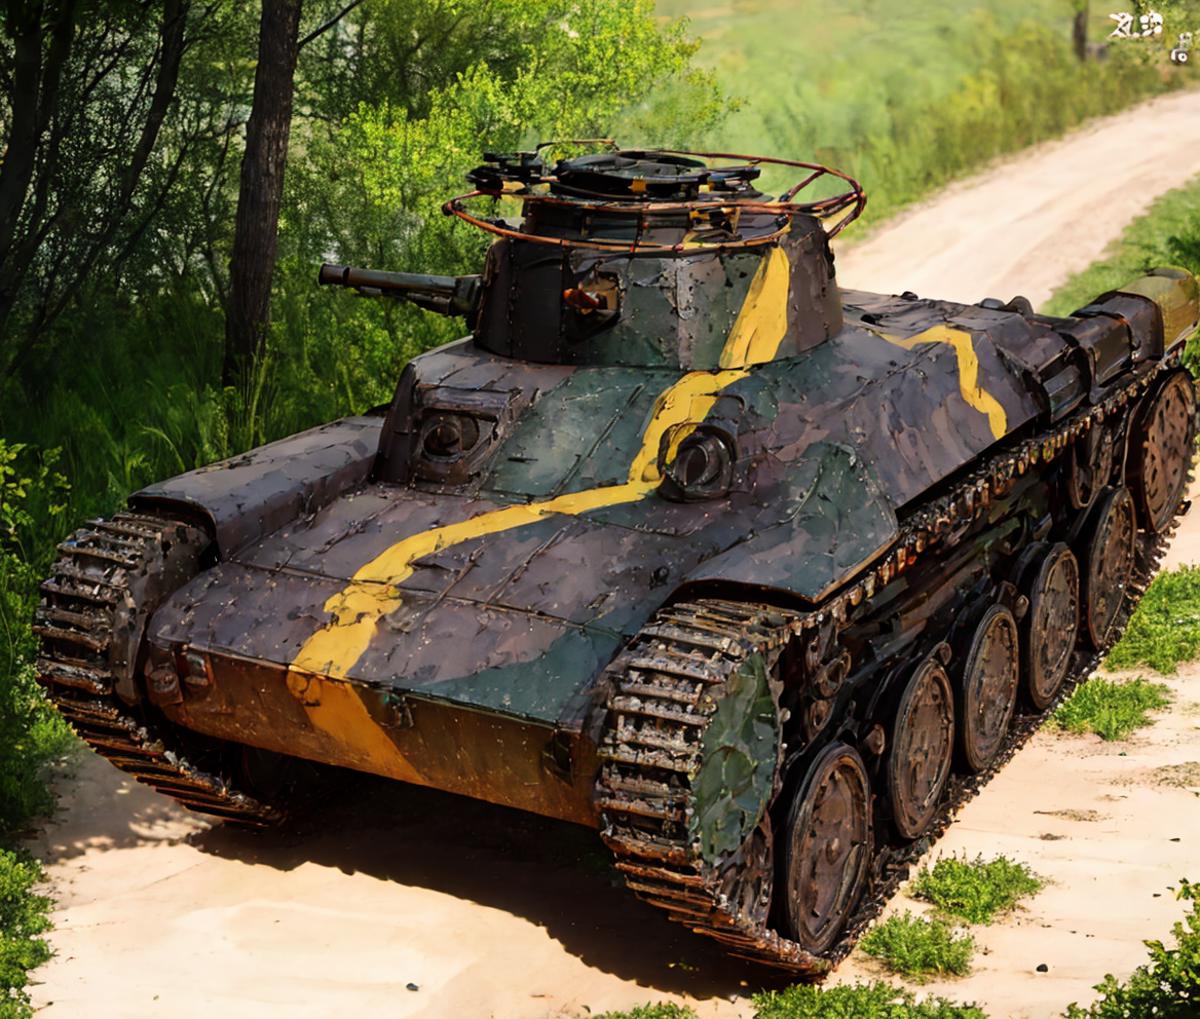 九七式中戦車旧砲塔新車体Type97middle tank old turret image by toshiakifutaba